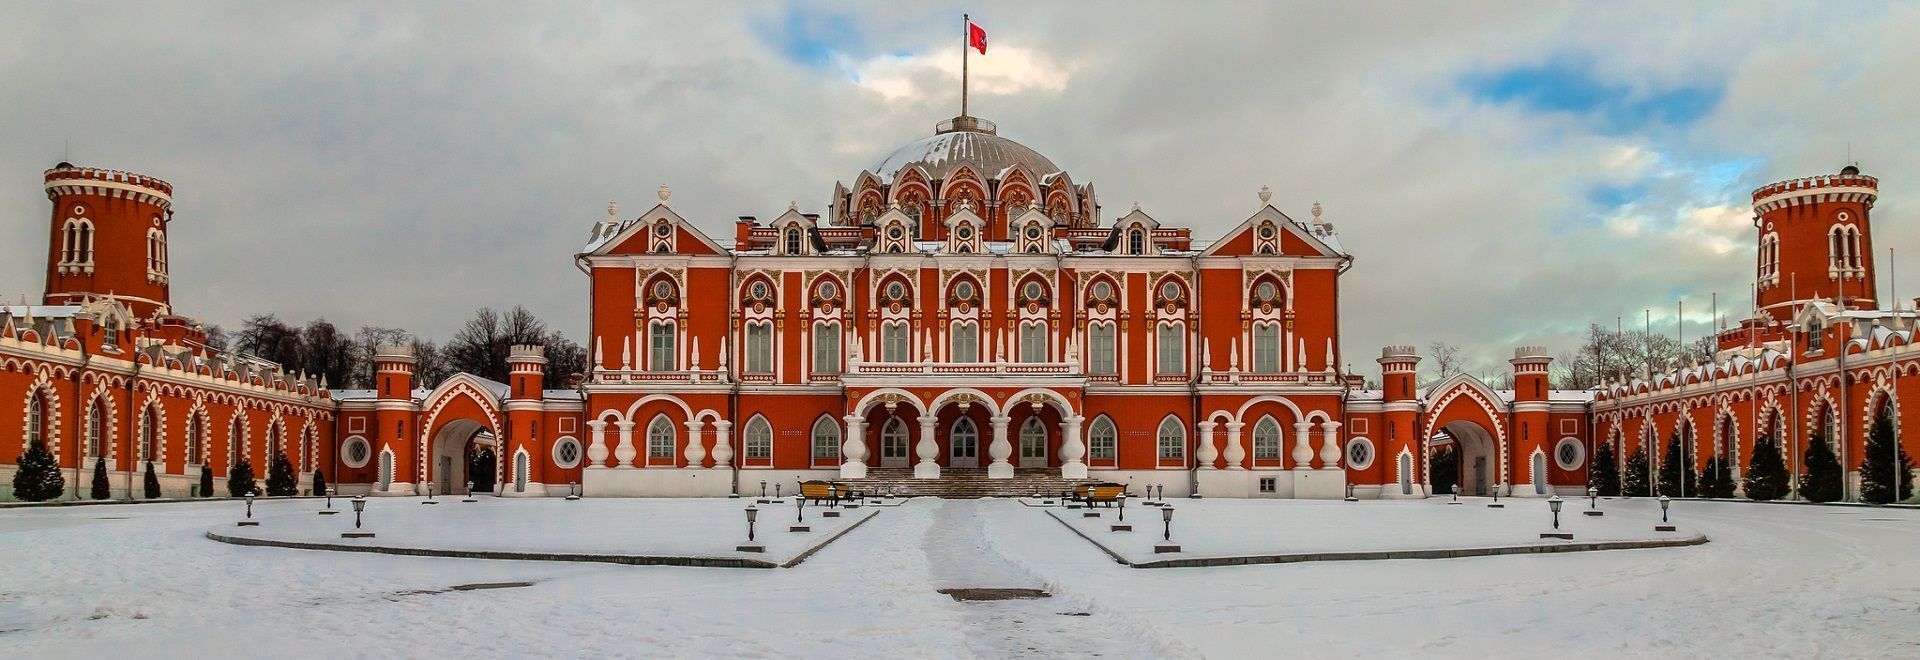 Петровский путевой дворец концерты